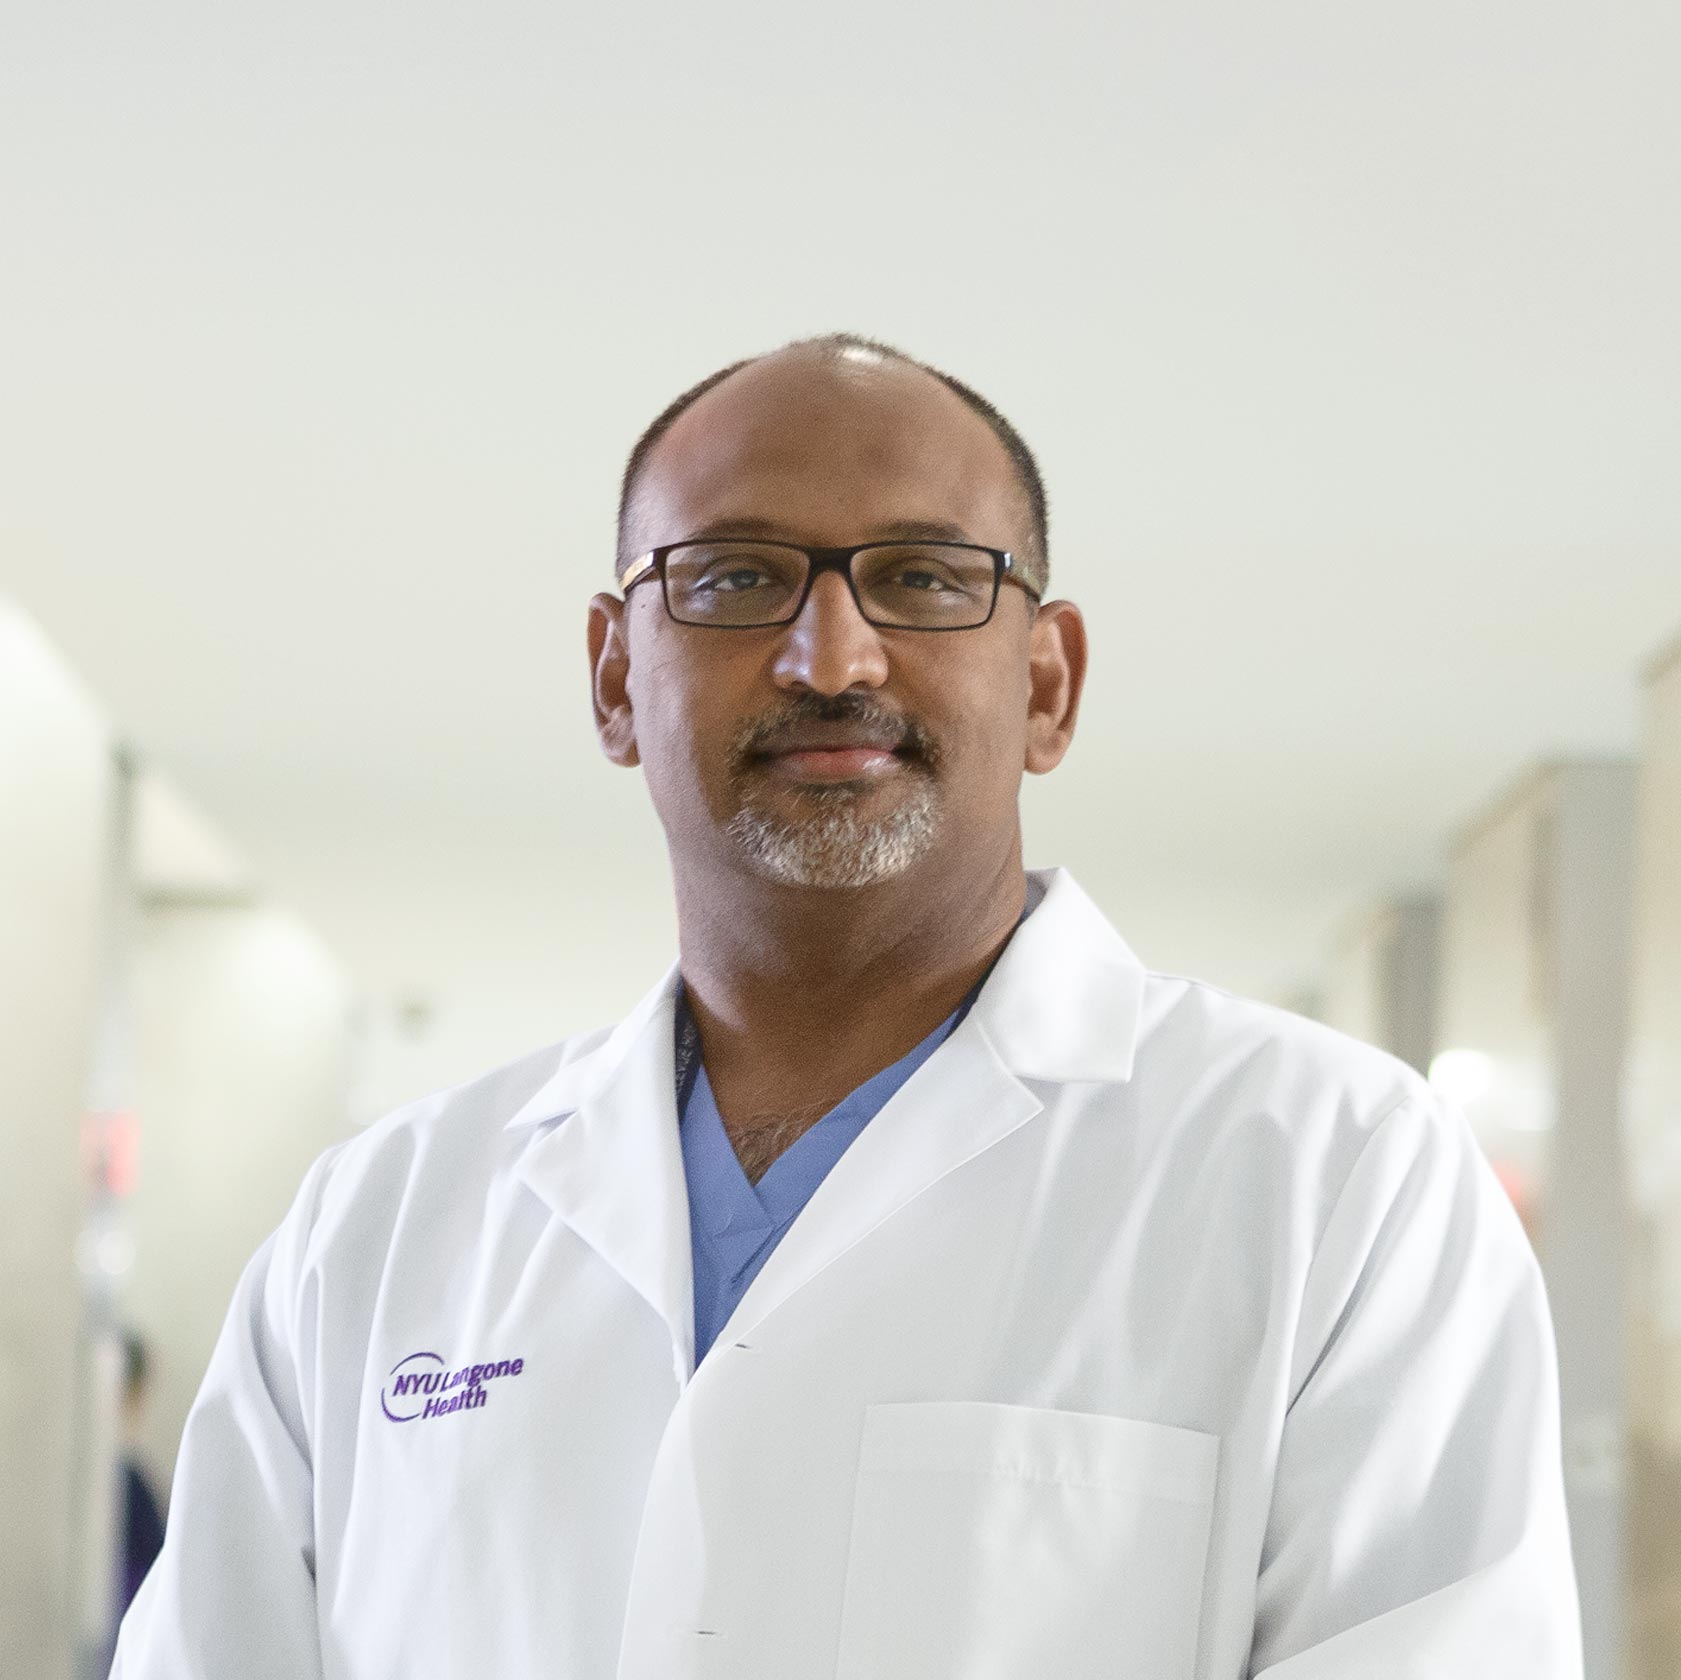 Dr. Paresh Shah